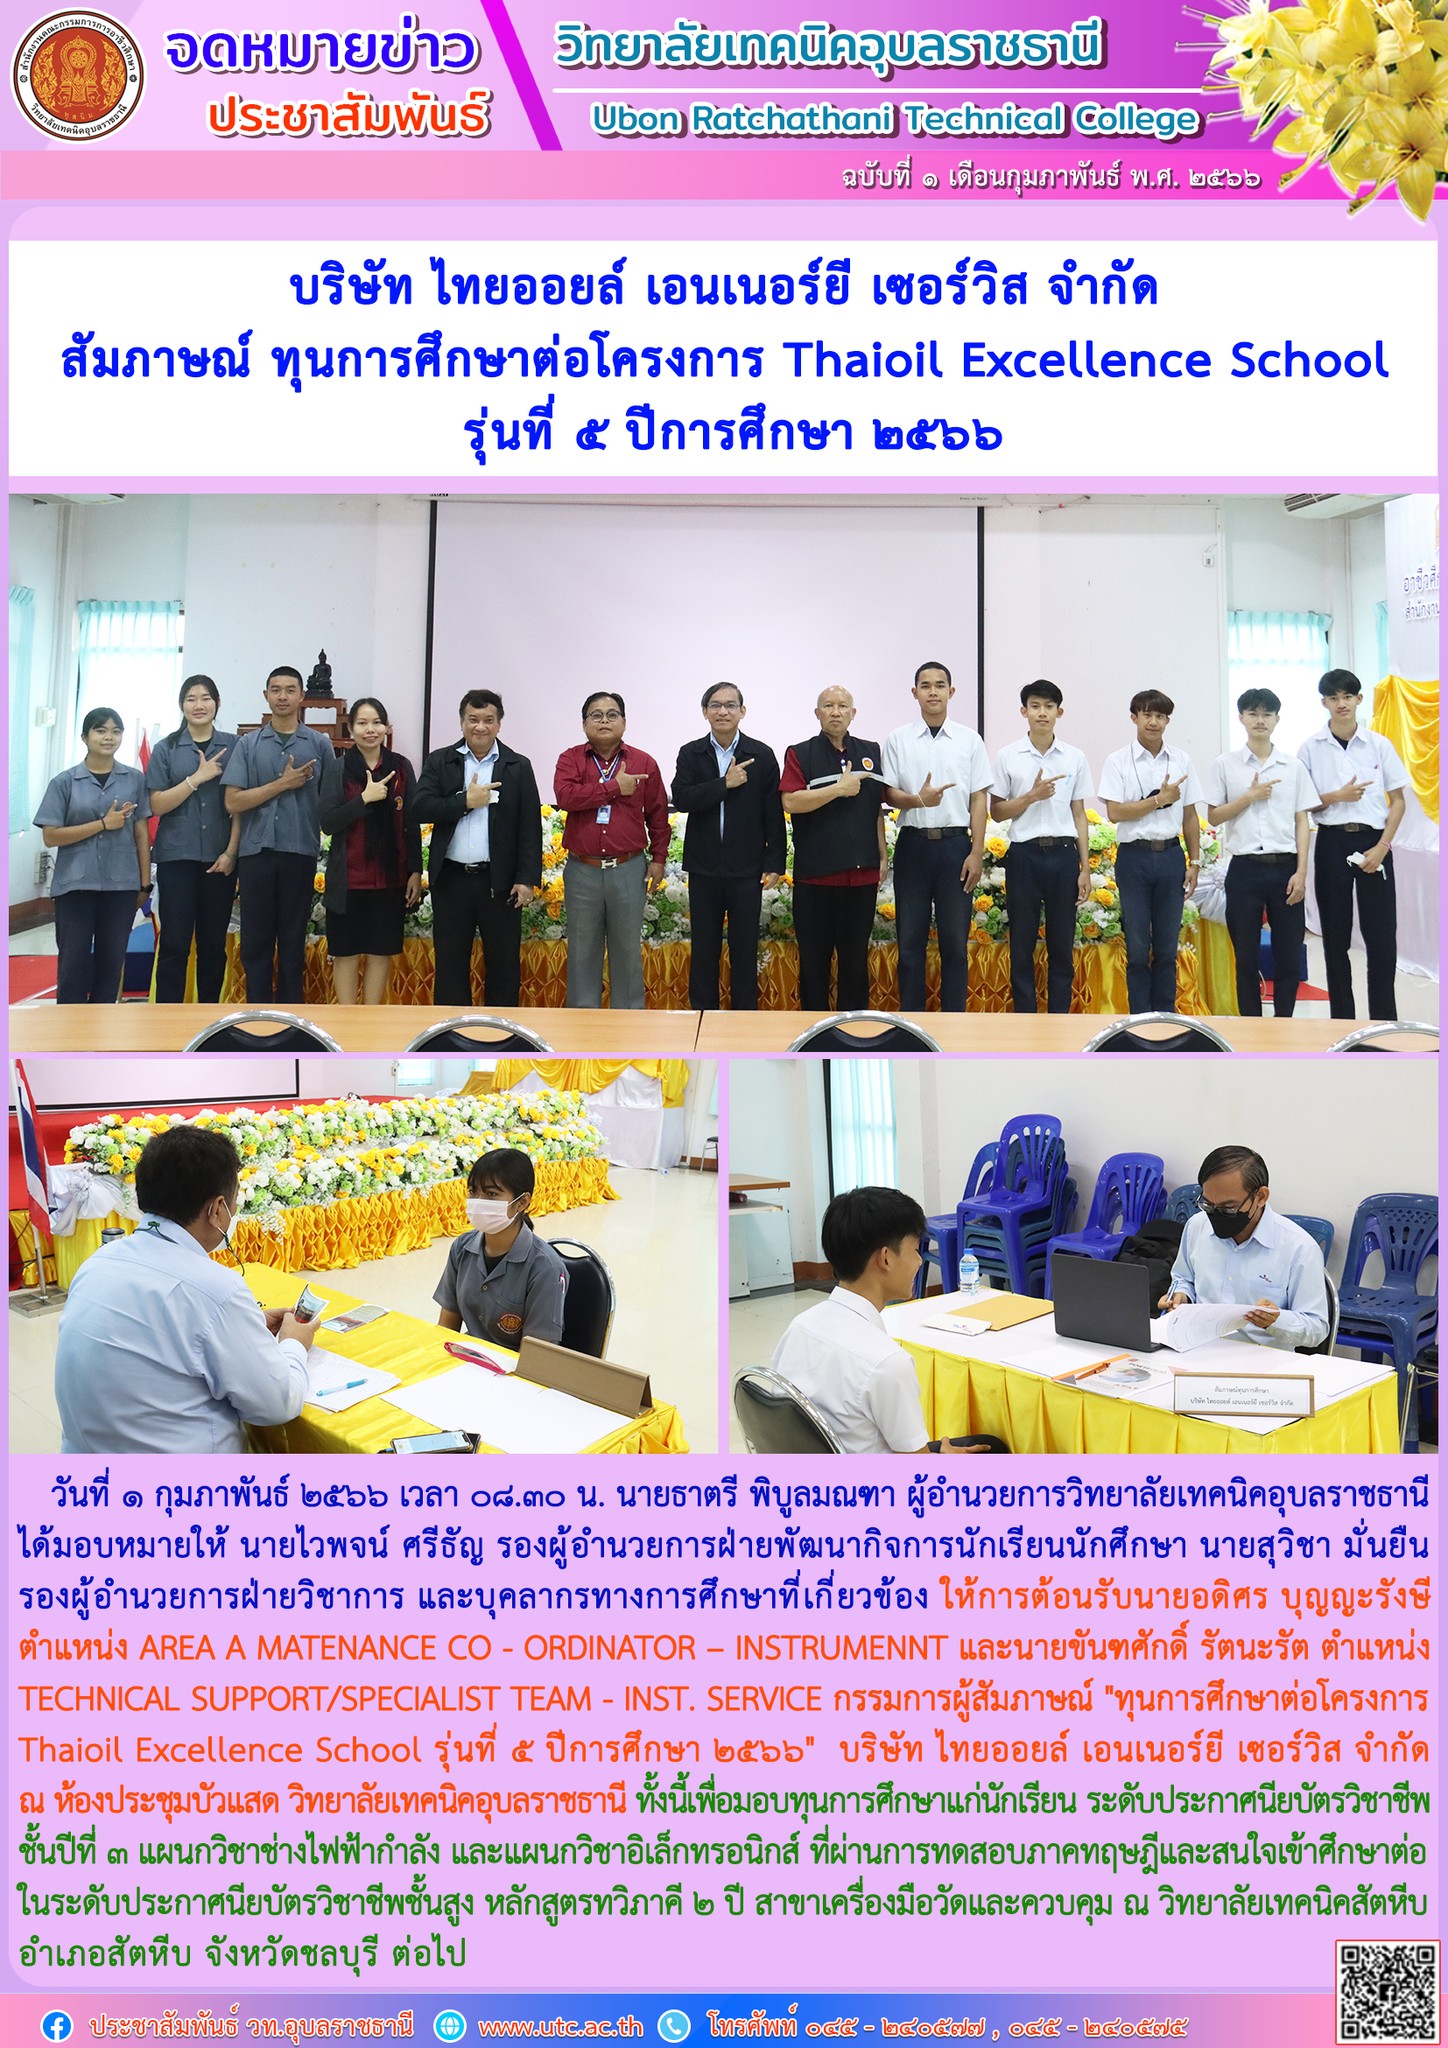 บรษท ไทยออยล เอนเนอรย เซอรวส จำกด สมภาษณ ทนการศกษาตอโครงการ Thaioil Excellence